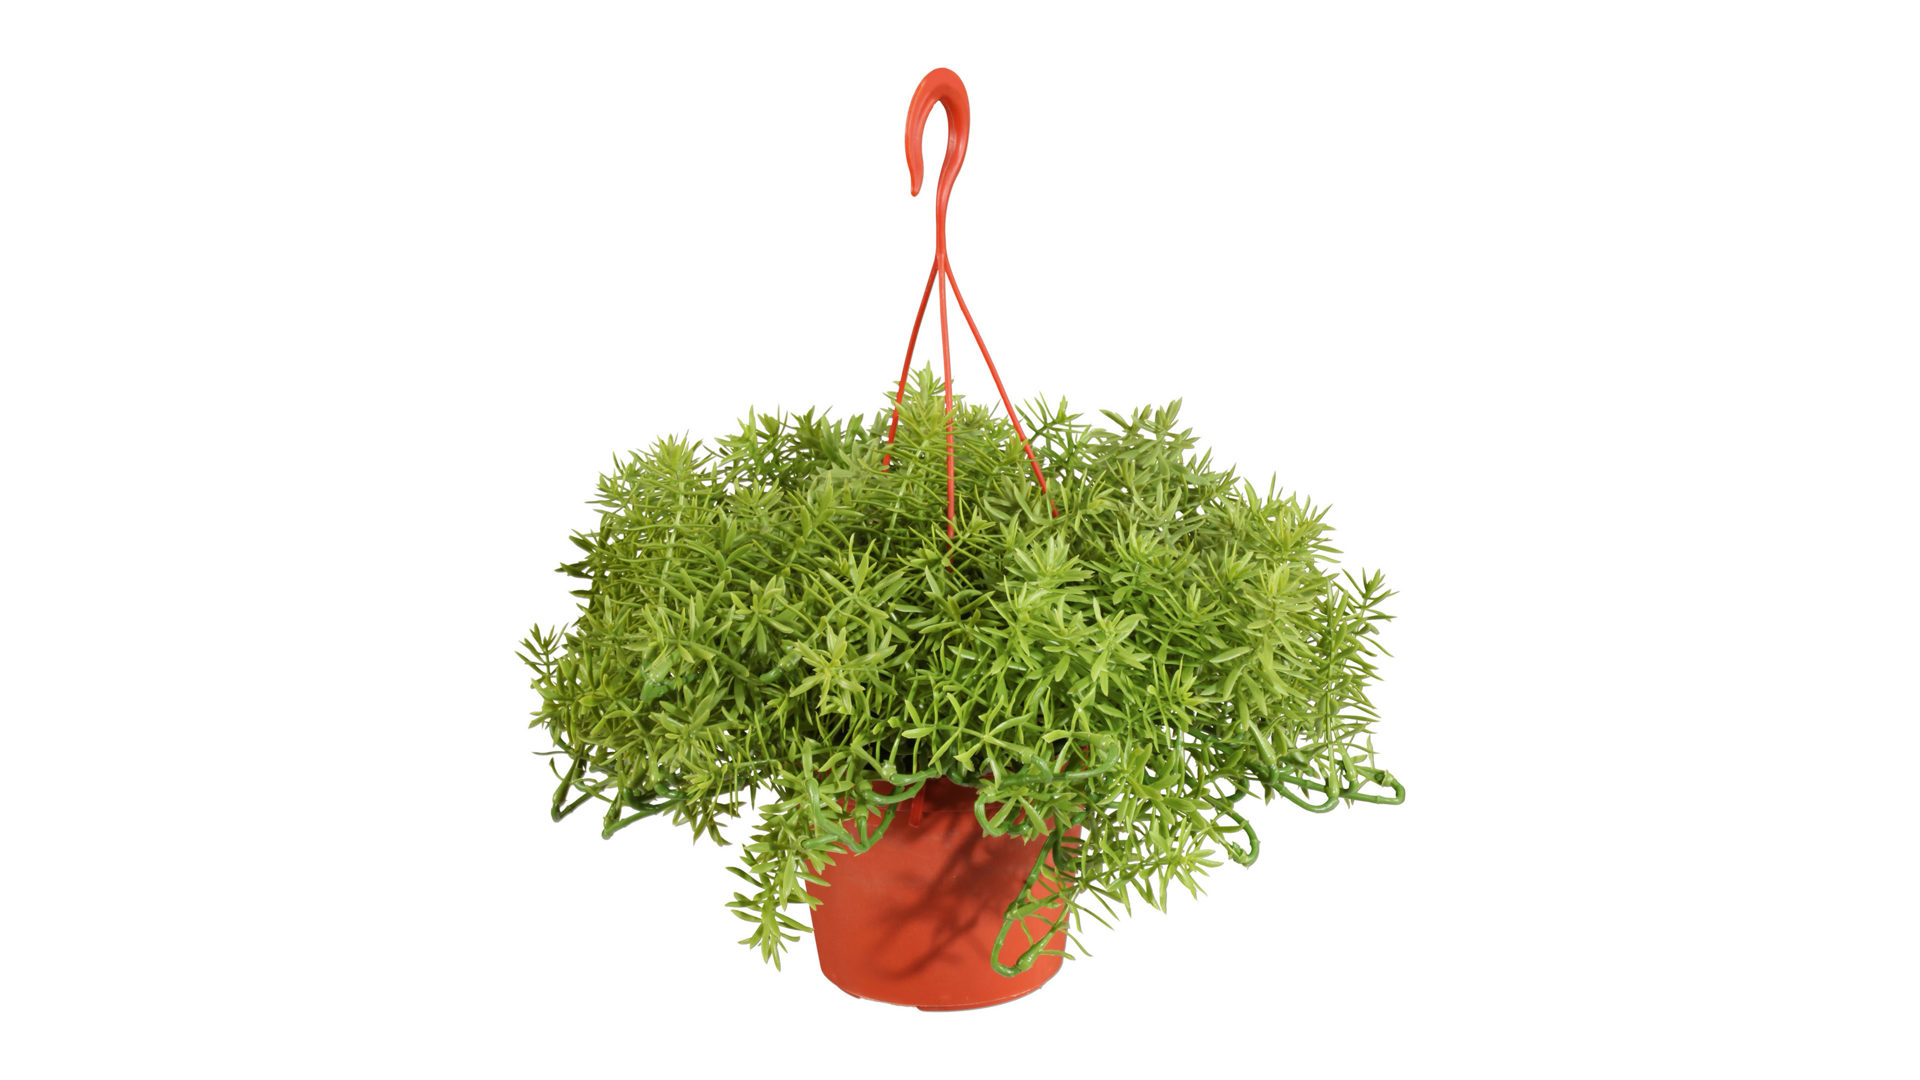 Pflanze Gasper aus Kunststoff in Grün Hängepflanze Goldkreuzkraut senecio aureus künstliche Grünpflanze - ca. 19 cm hoch